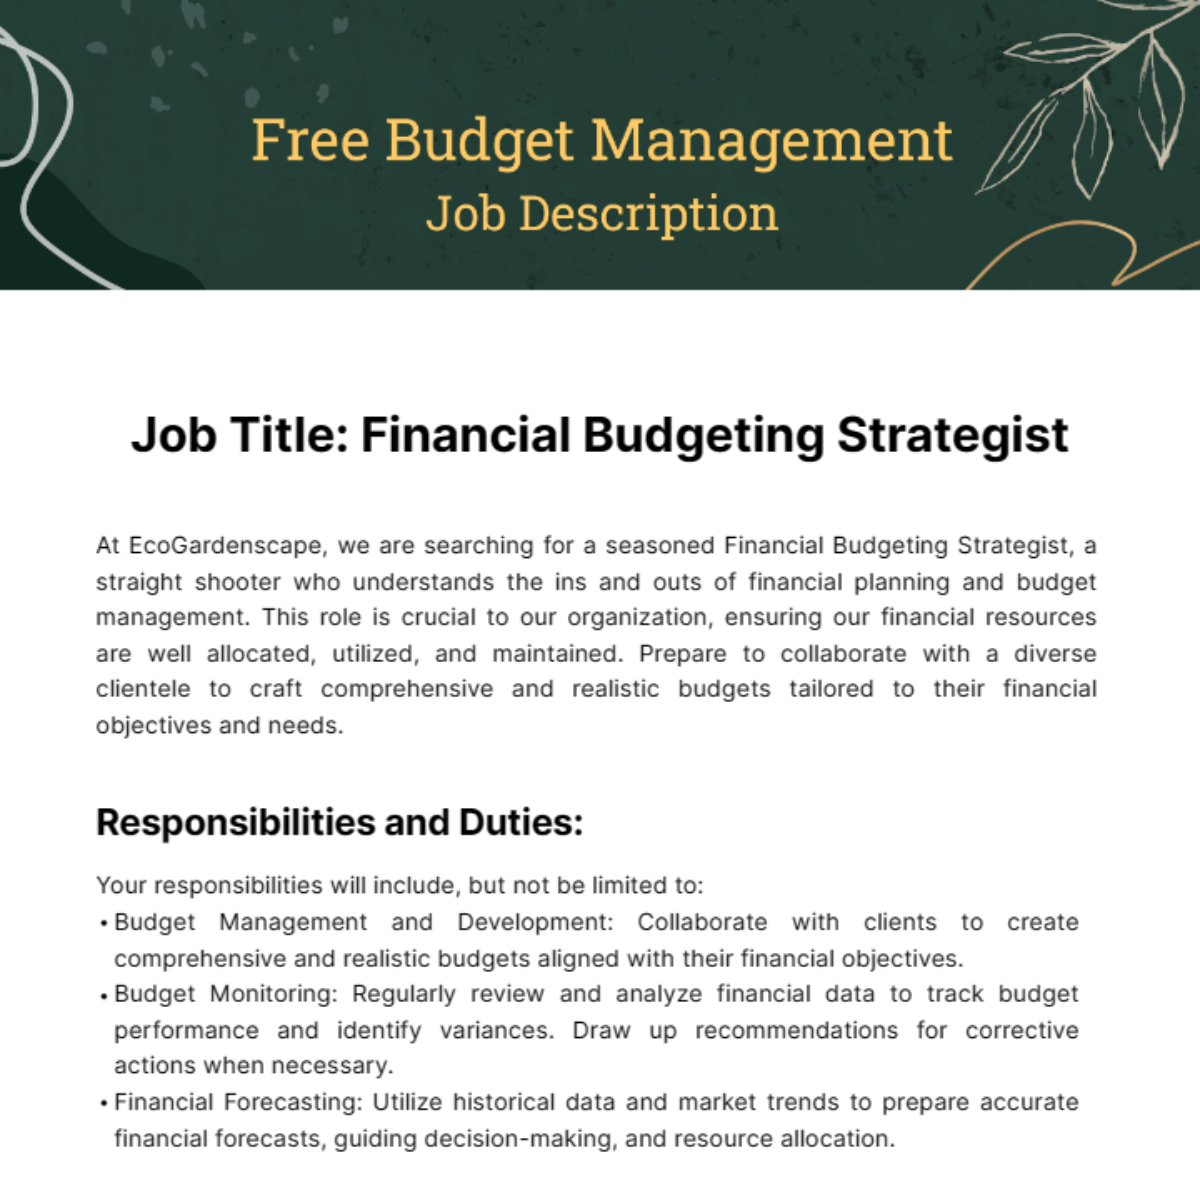 Budget Management Job Description Template